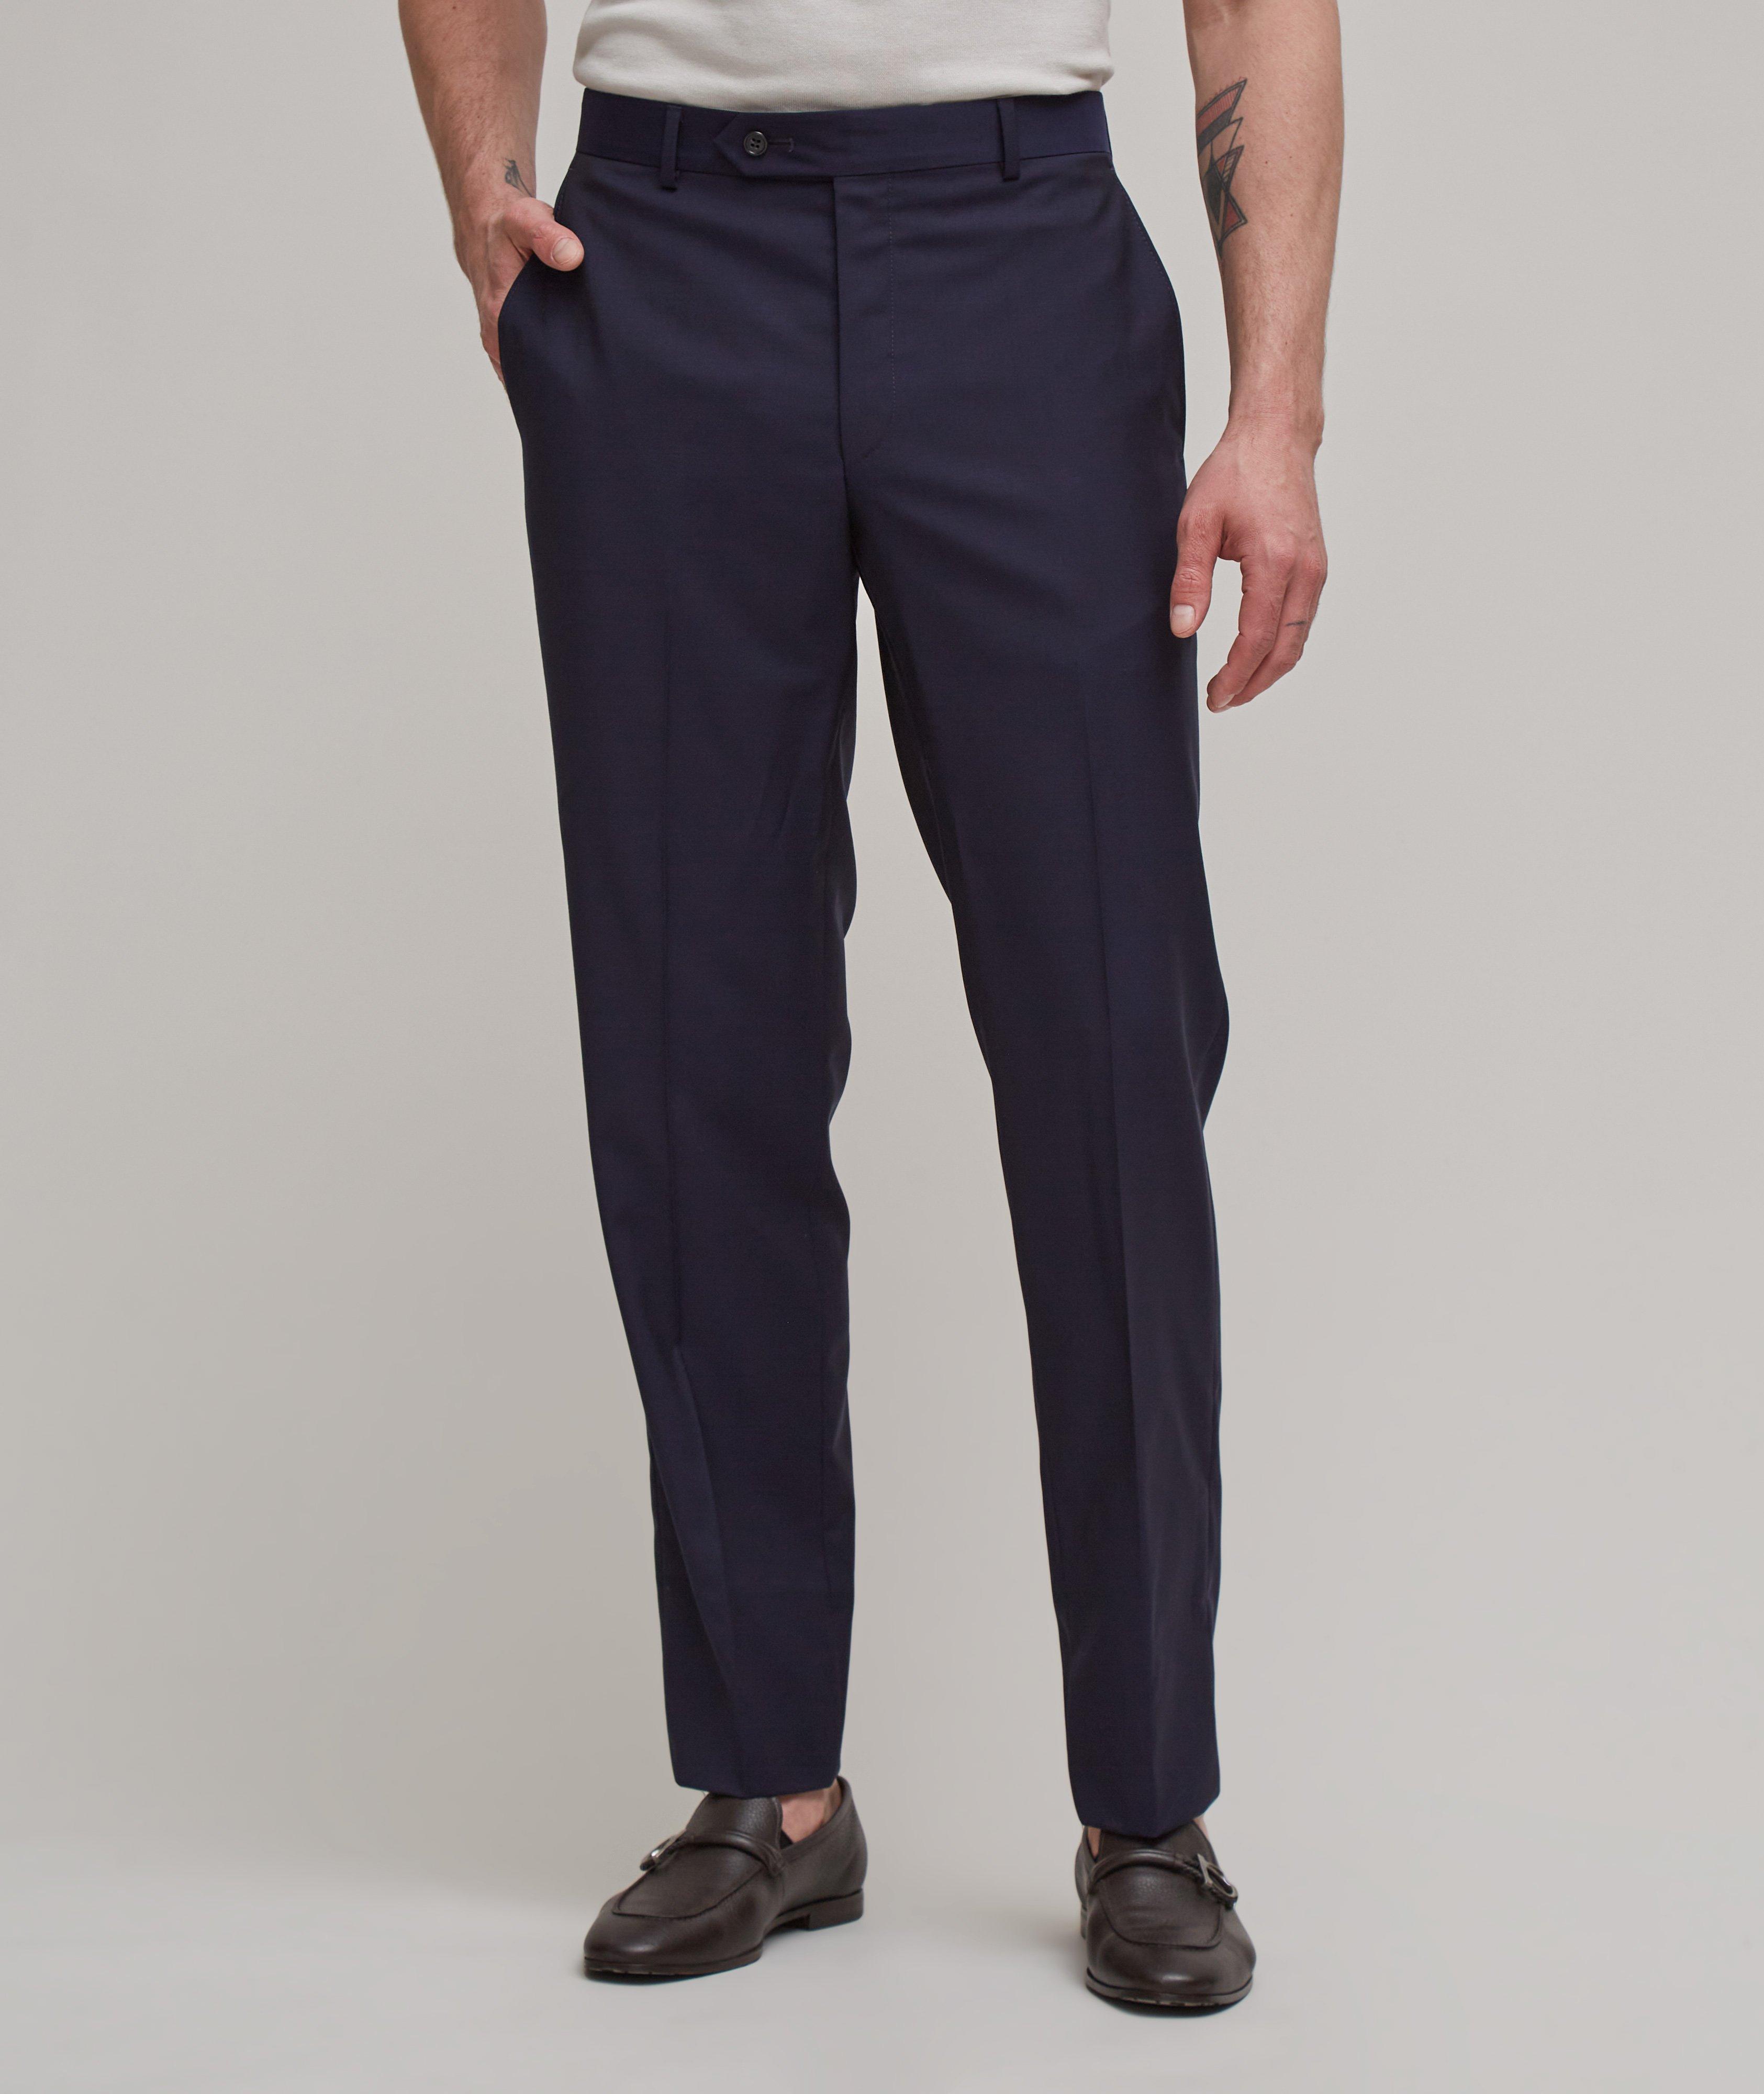 Pantalon habillé en laine Super 110, collection tropicale image 1